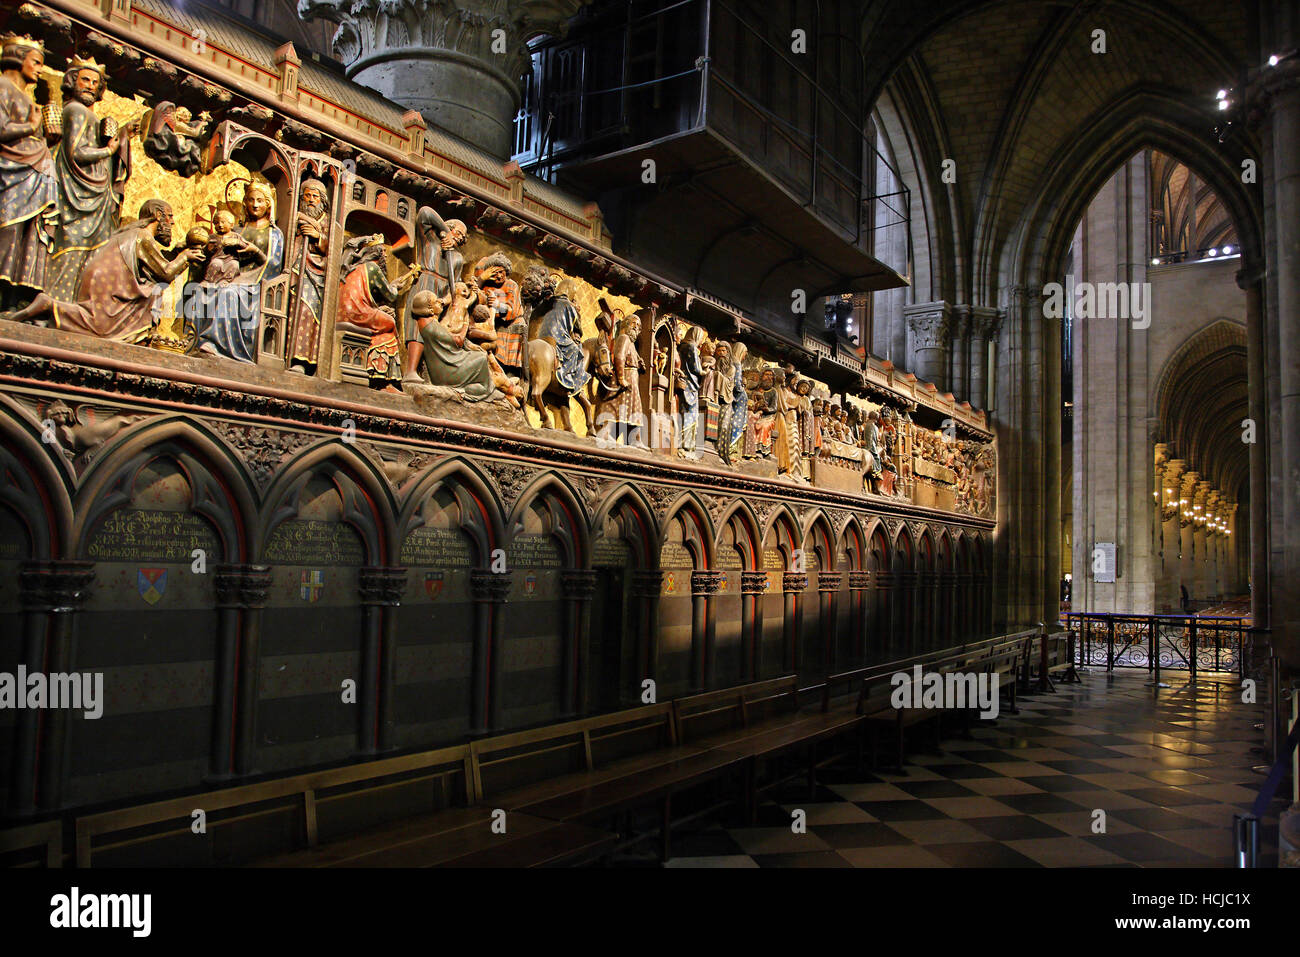 Holzplatten für das 14. Jahrhundert mit Szenen aus dem Leben des Jesus Christus im Inneren der Kathedrale Notre Dame, Paris, Frankreich. Stockfoto